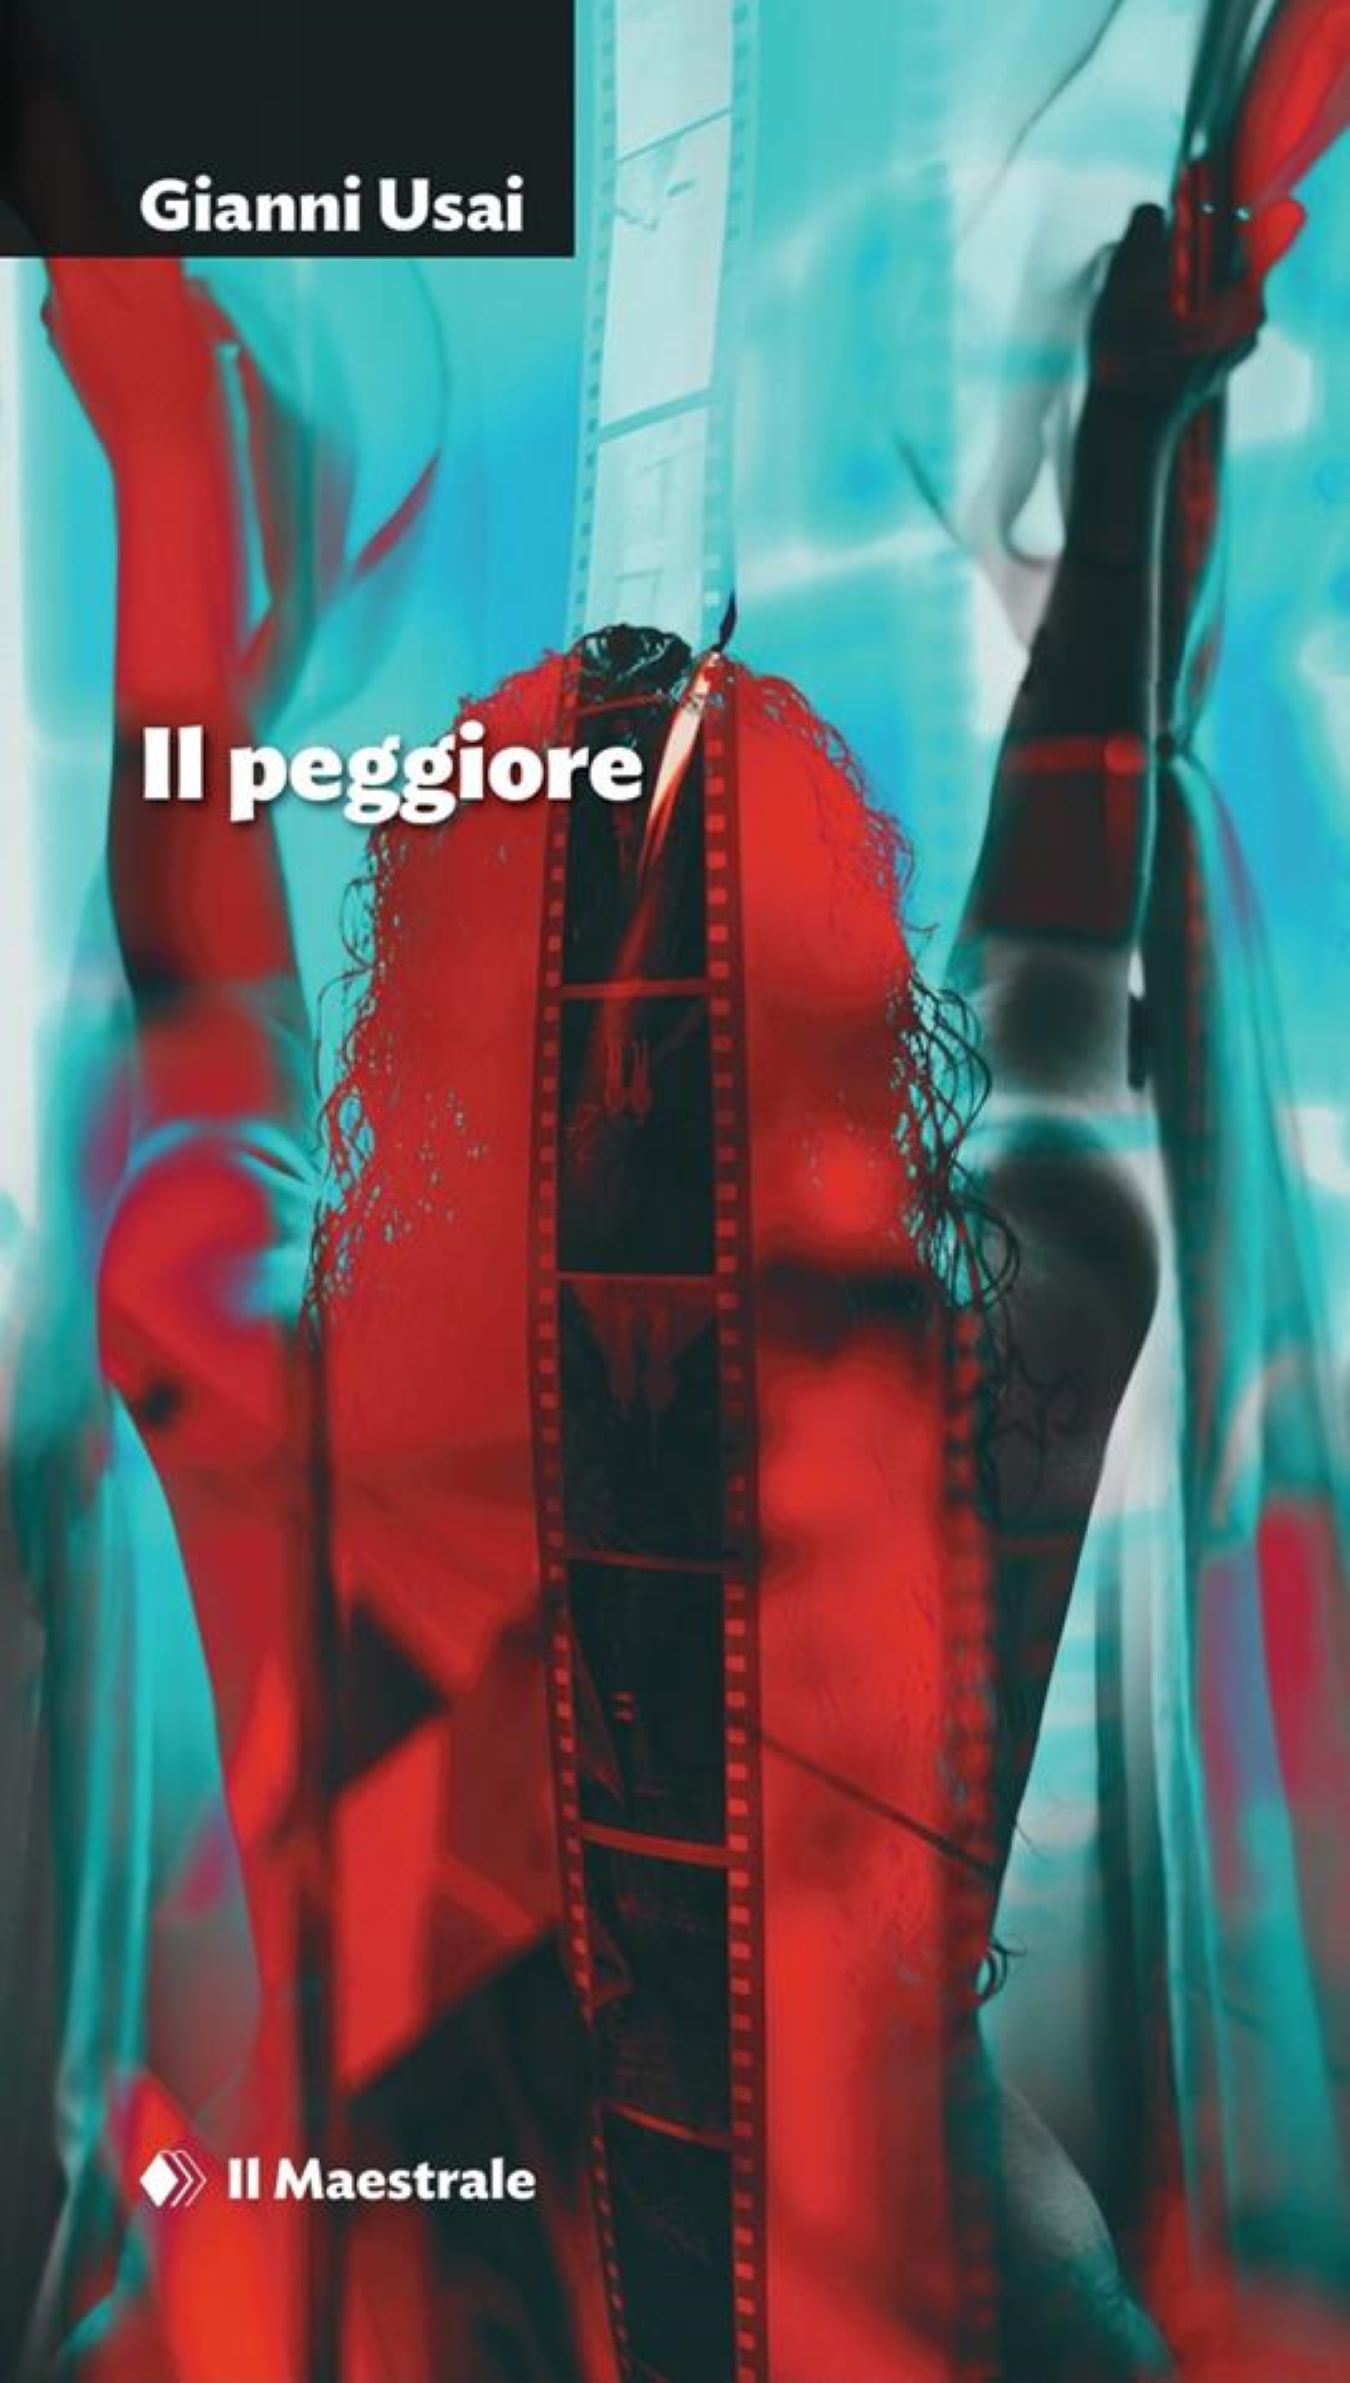 Libri, Gianni Usai presenta il nuovo romanzo “Il Peggiore”. Appuntamnto stasera al Massimo di Cagliari